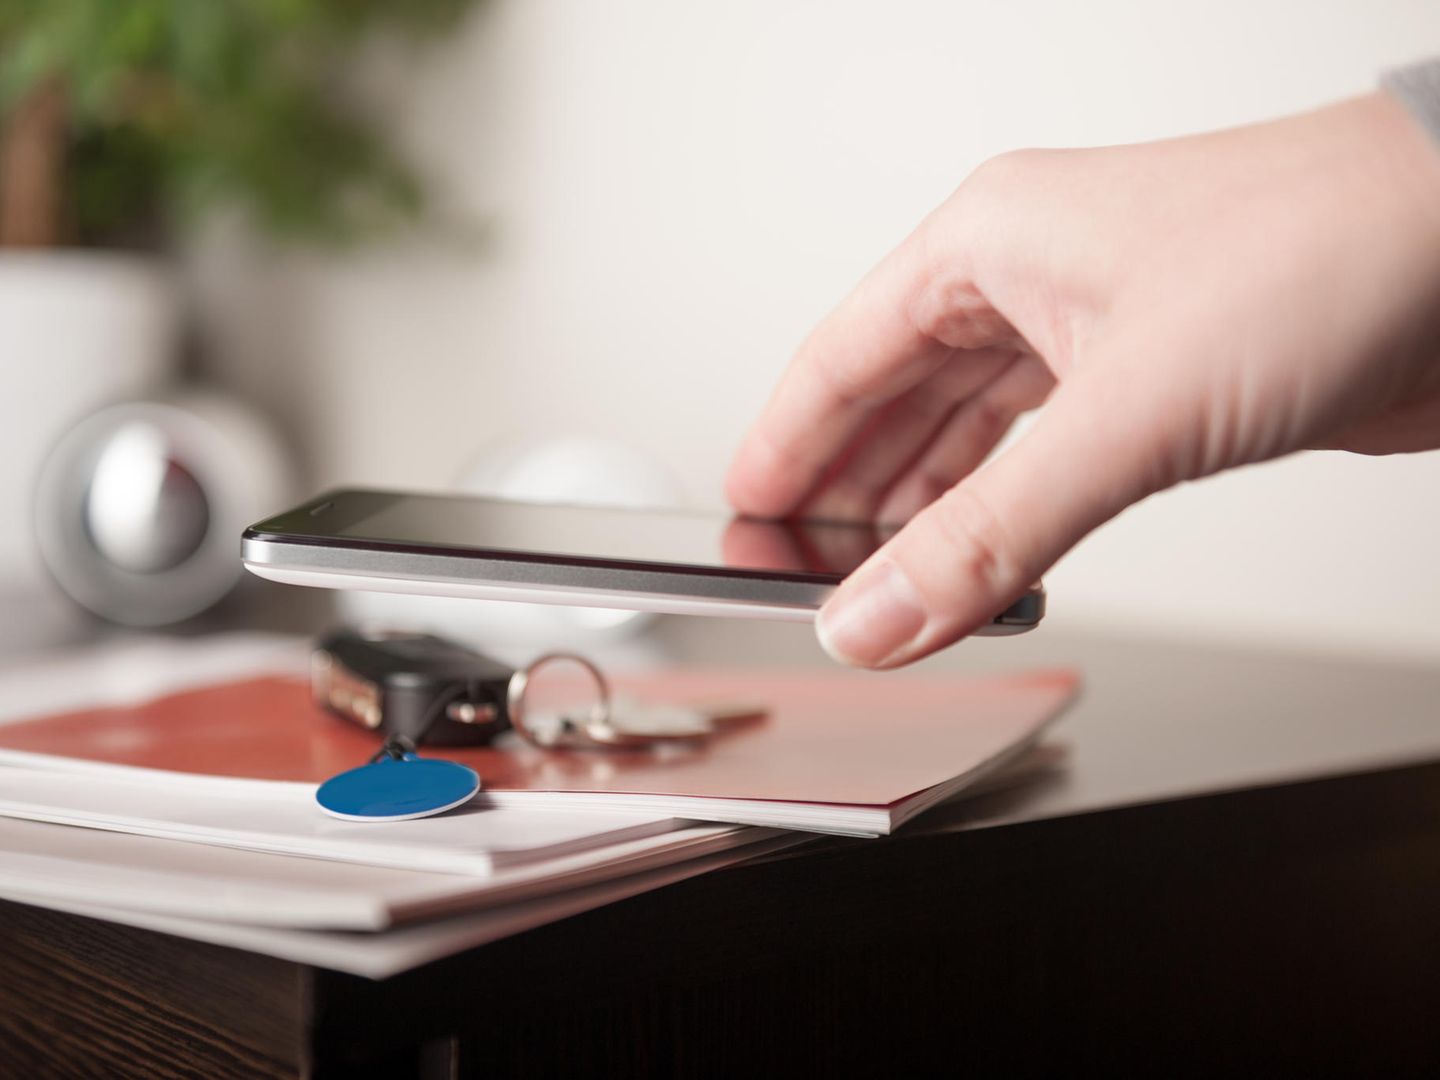 NFC-Tags im Smart Home: So richten Sie die günstigen Helfer ein